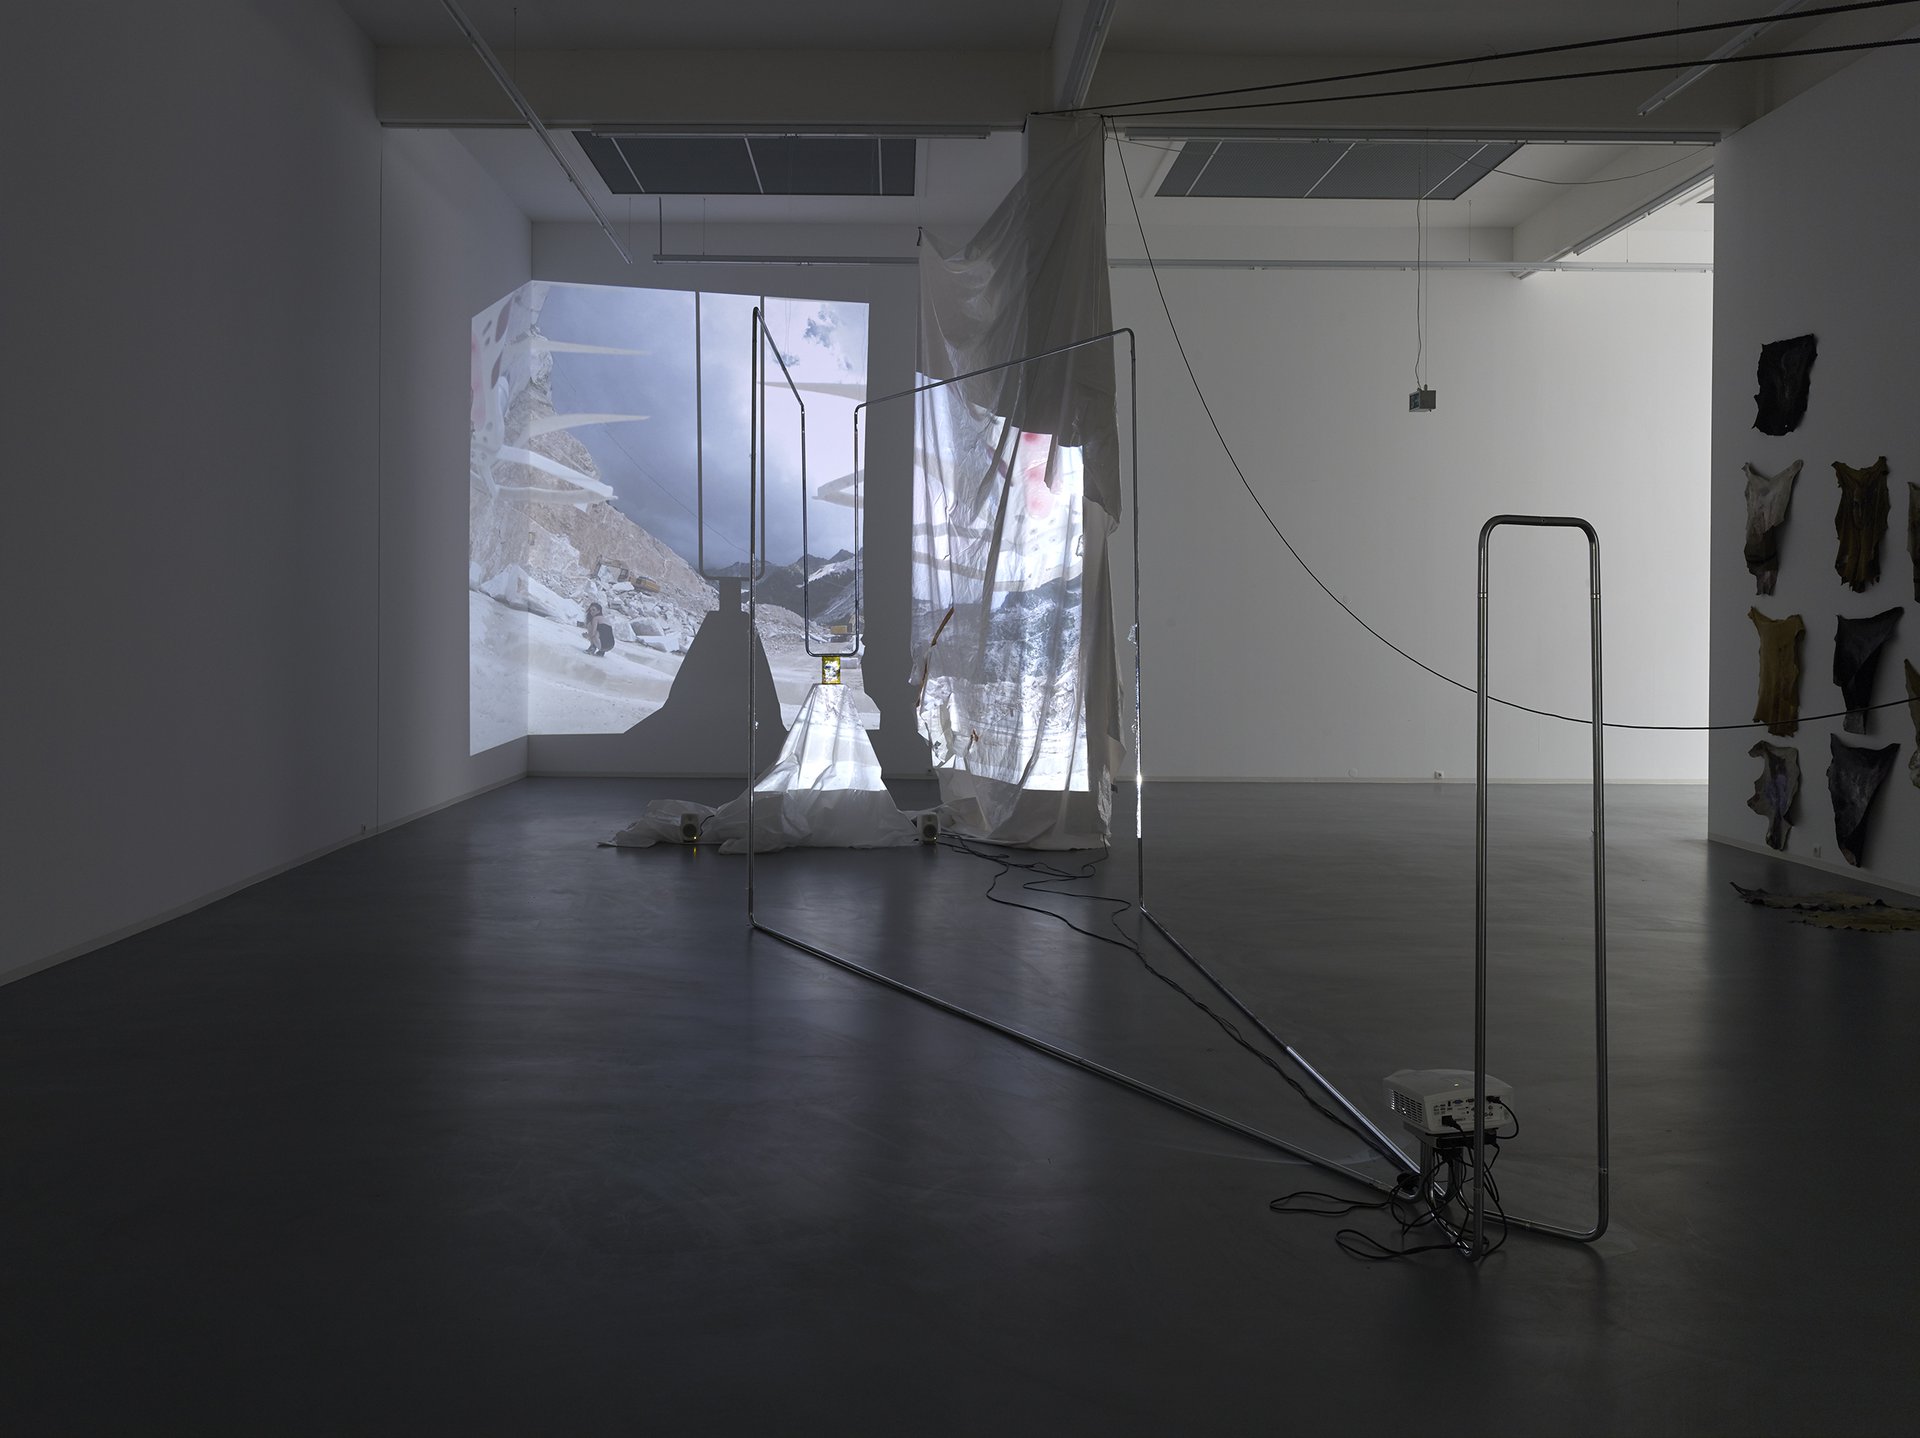 Raphaela Vogel, Installationsansicht, 2015, Bonner Kunstverein, Courtesy die Künstlerin und BQ, Berlin. Photo: Simon Vogel